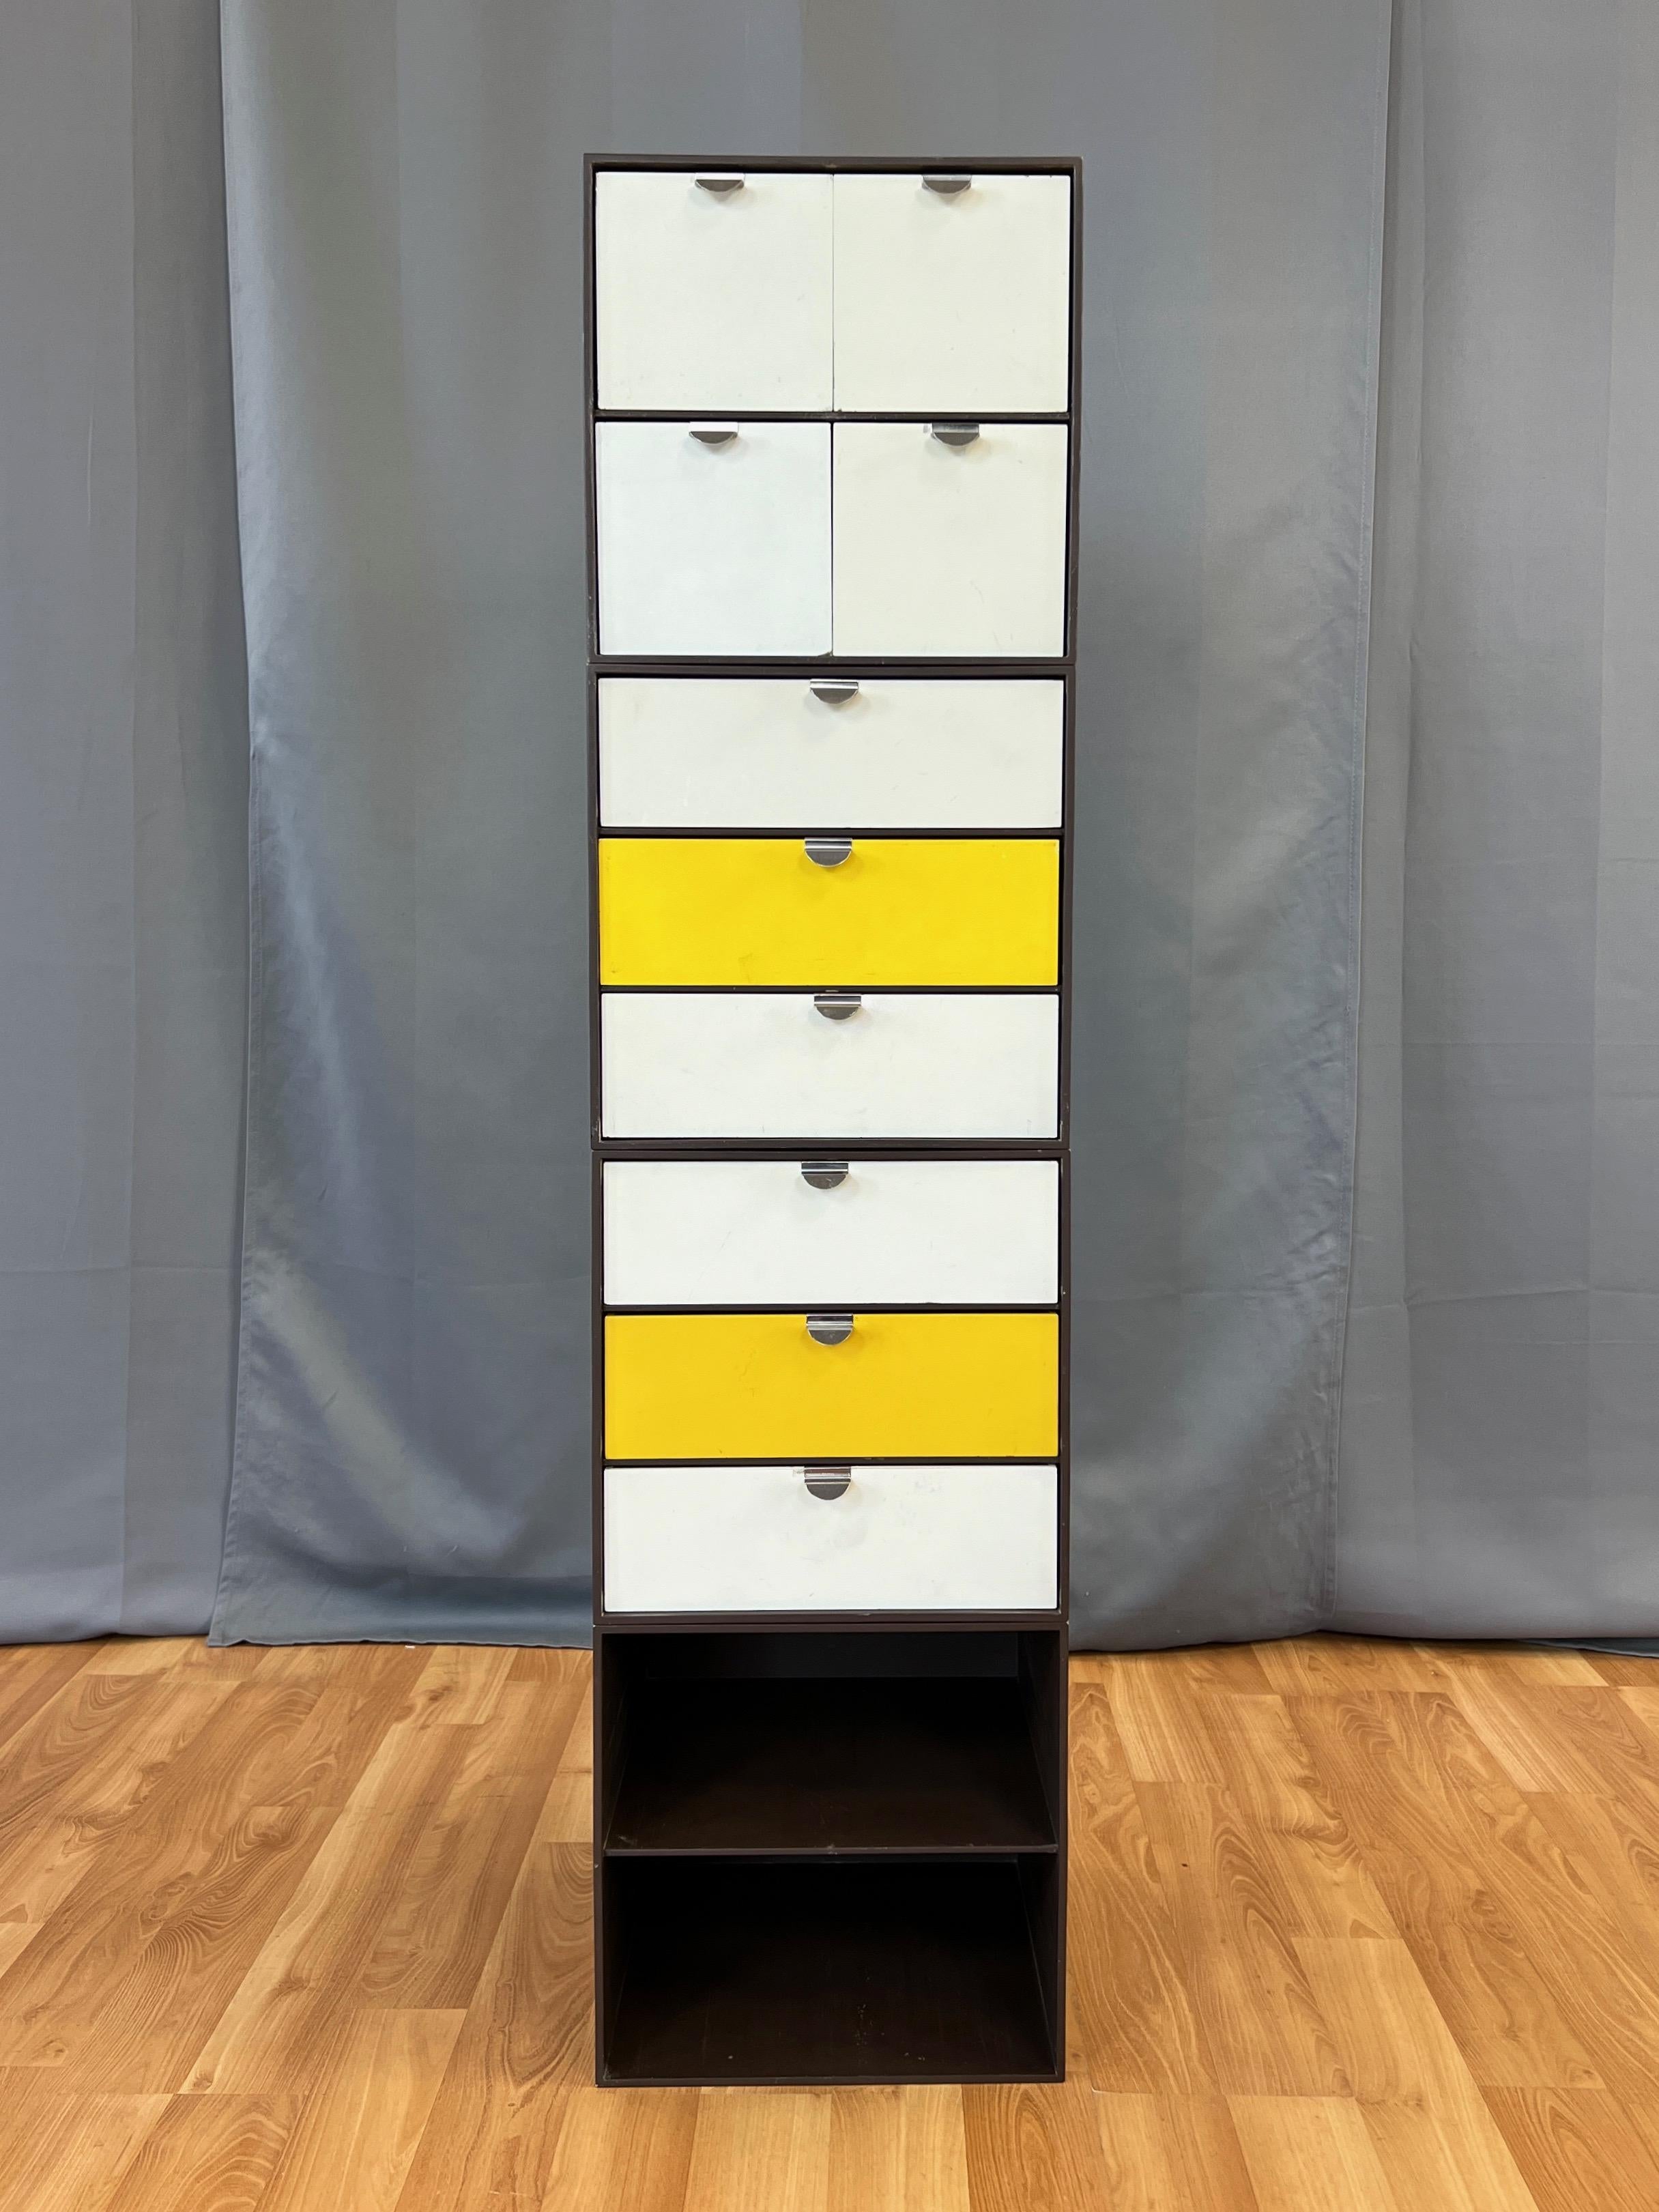 Ein vierteiliges Set von Palanox modularen Aufbewahrungsboxen oder -würfeln von Ristomatti Ratia für Palaset aus dem Jahr 1972, hergestellt von Treston Oy.

Das Set besteht aus einem braunen Würfel mit vier quadratischen weißen Schubladen, zwei